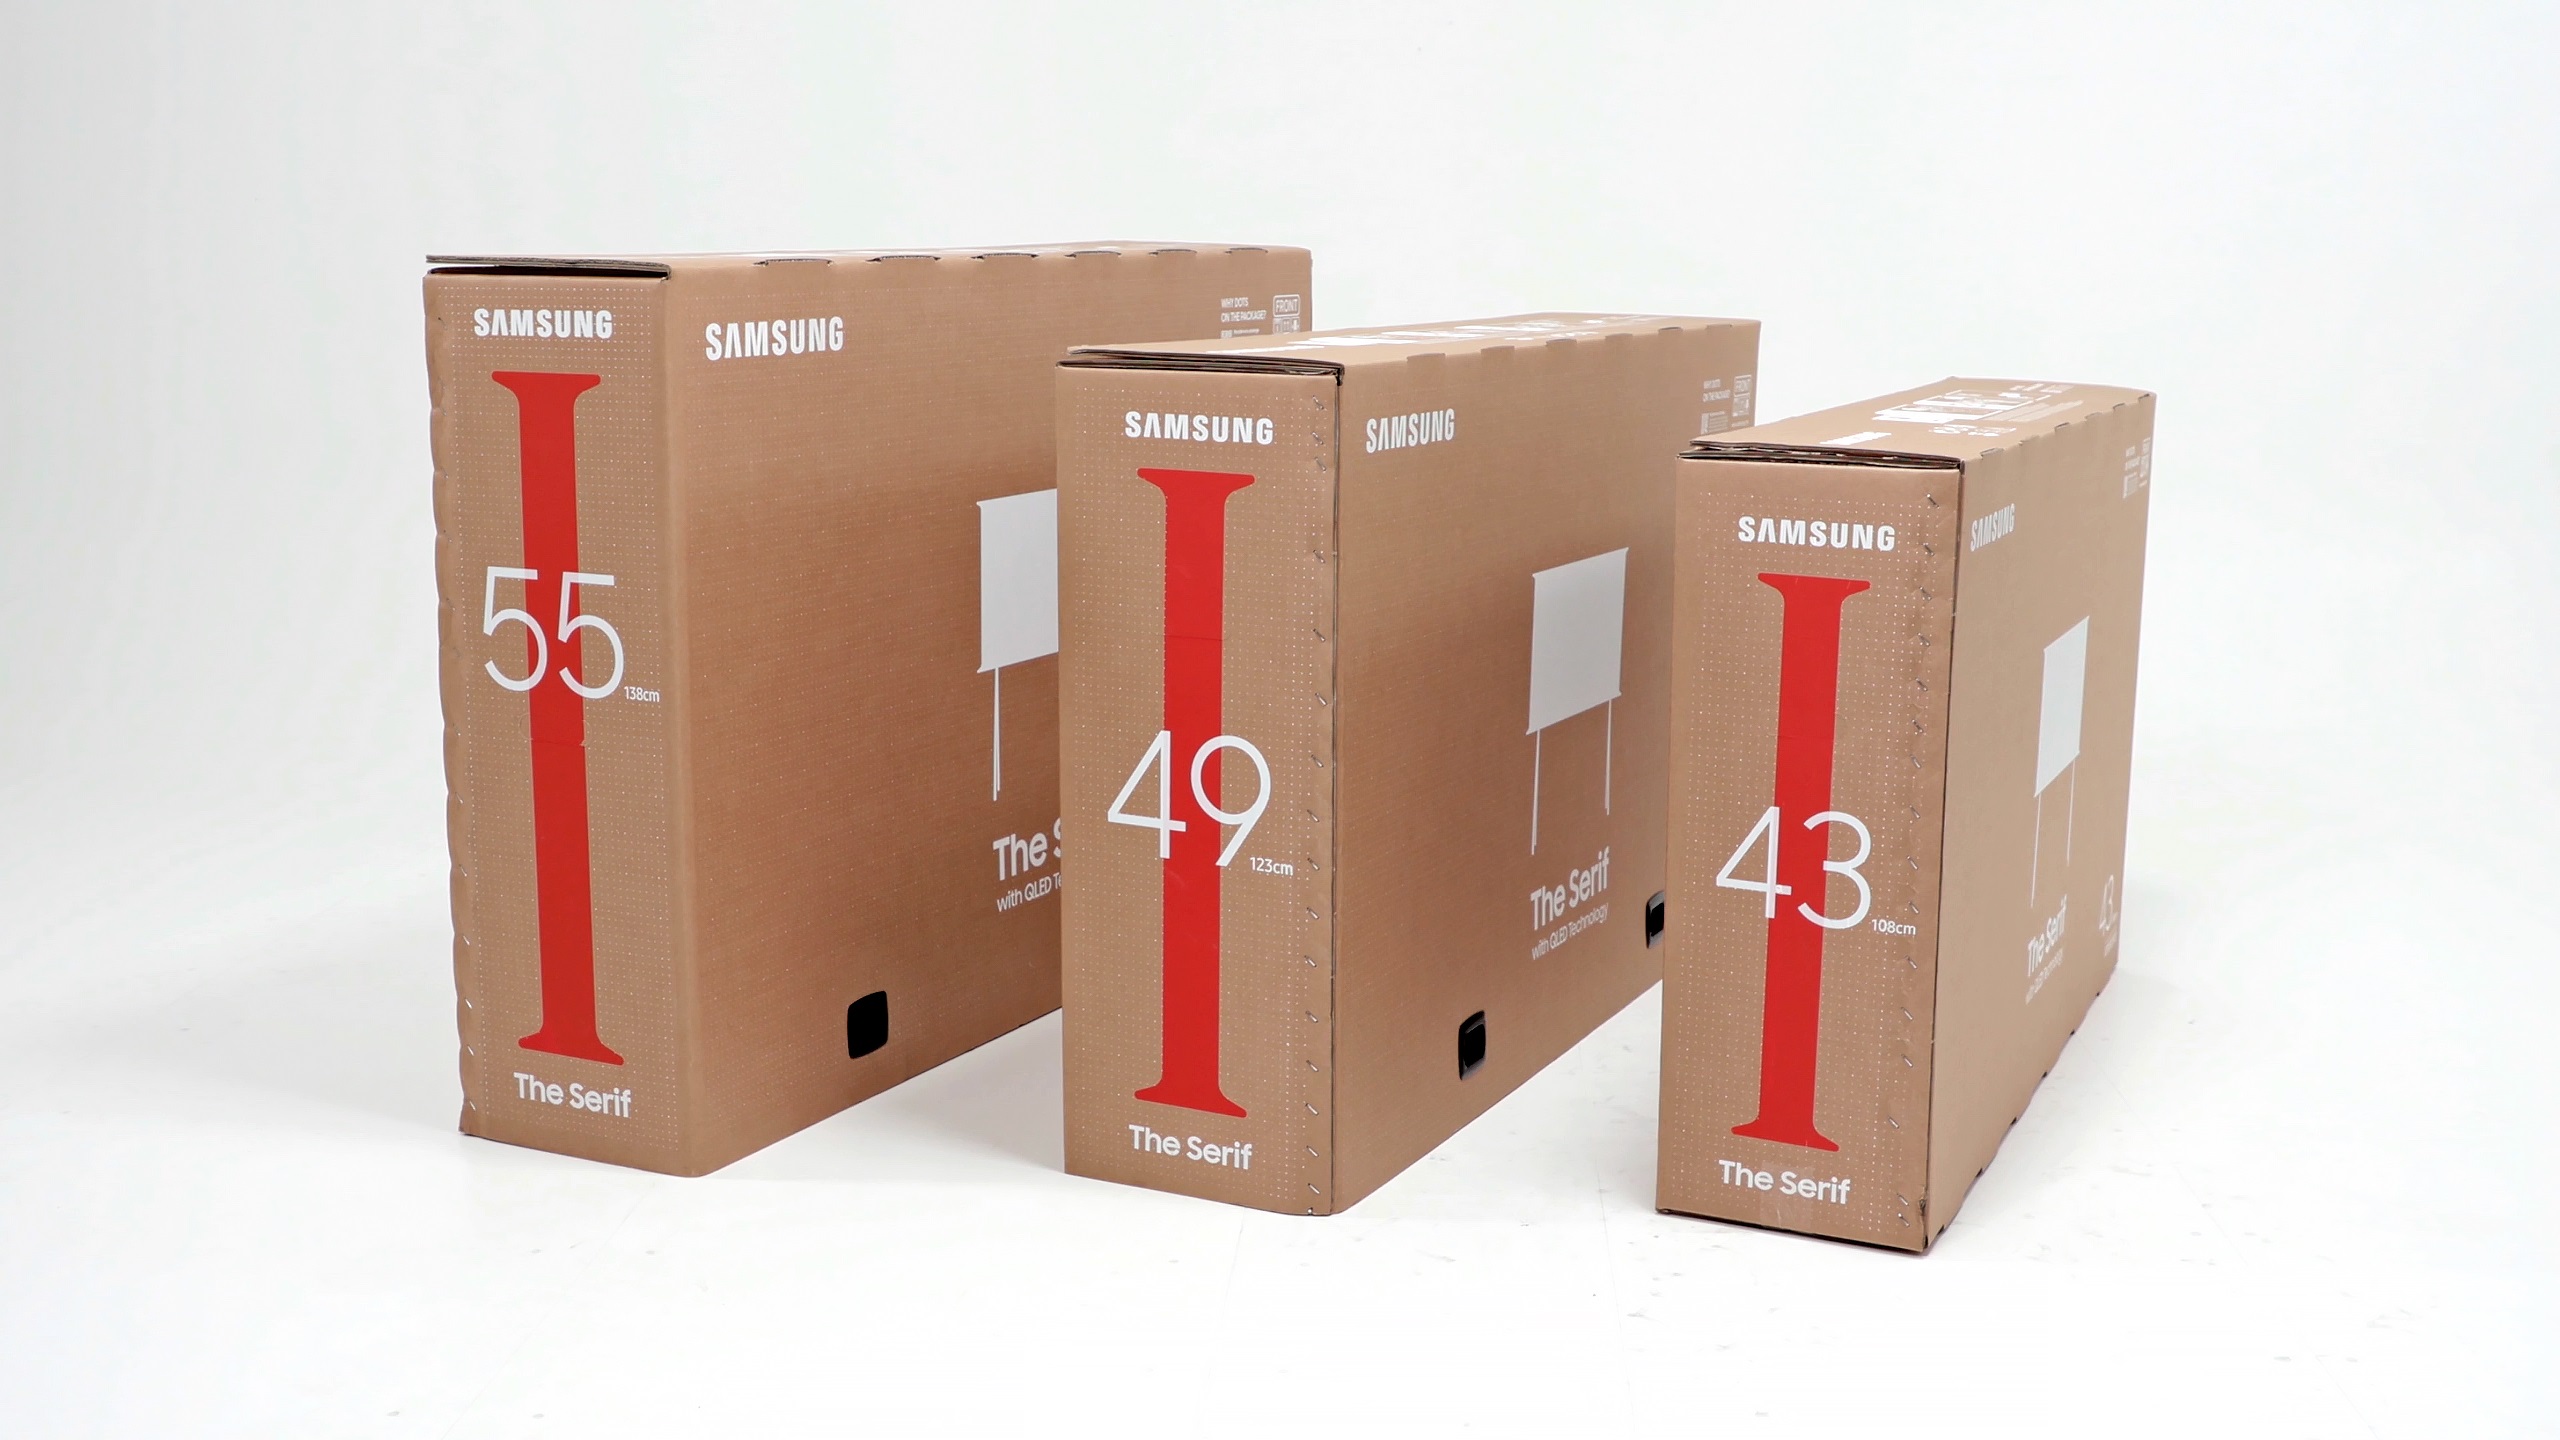 Samsung-Fernseher aus der Serif-Modellreihe in ihrer Umverpackung aus Pappe